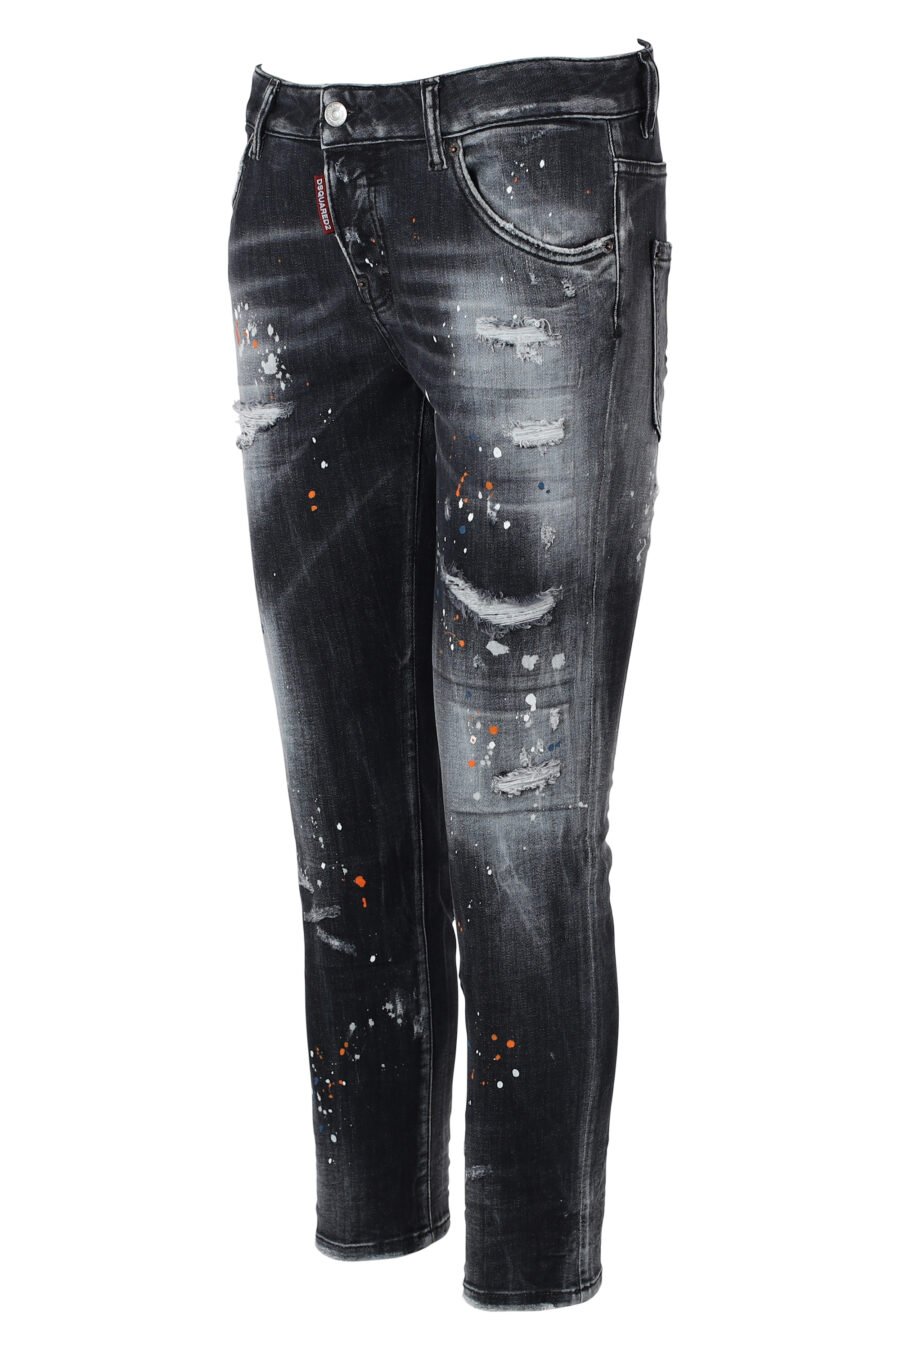 Jeans preto "cool girl" com pintura multicolorida - IMG 9858